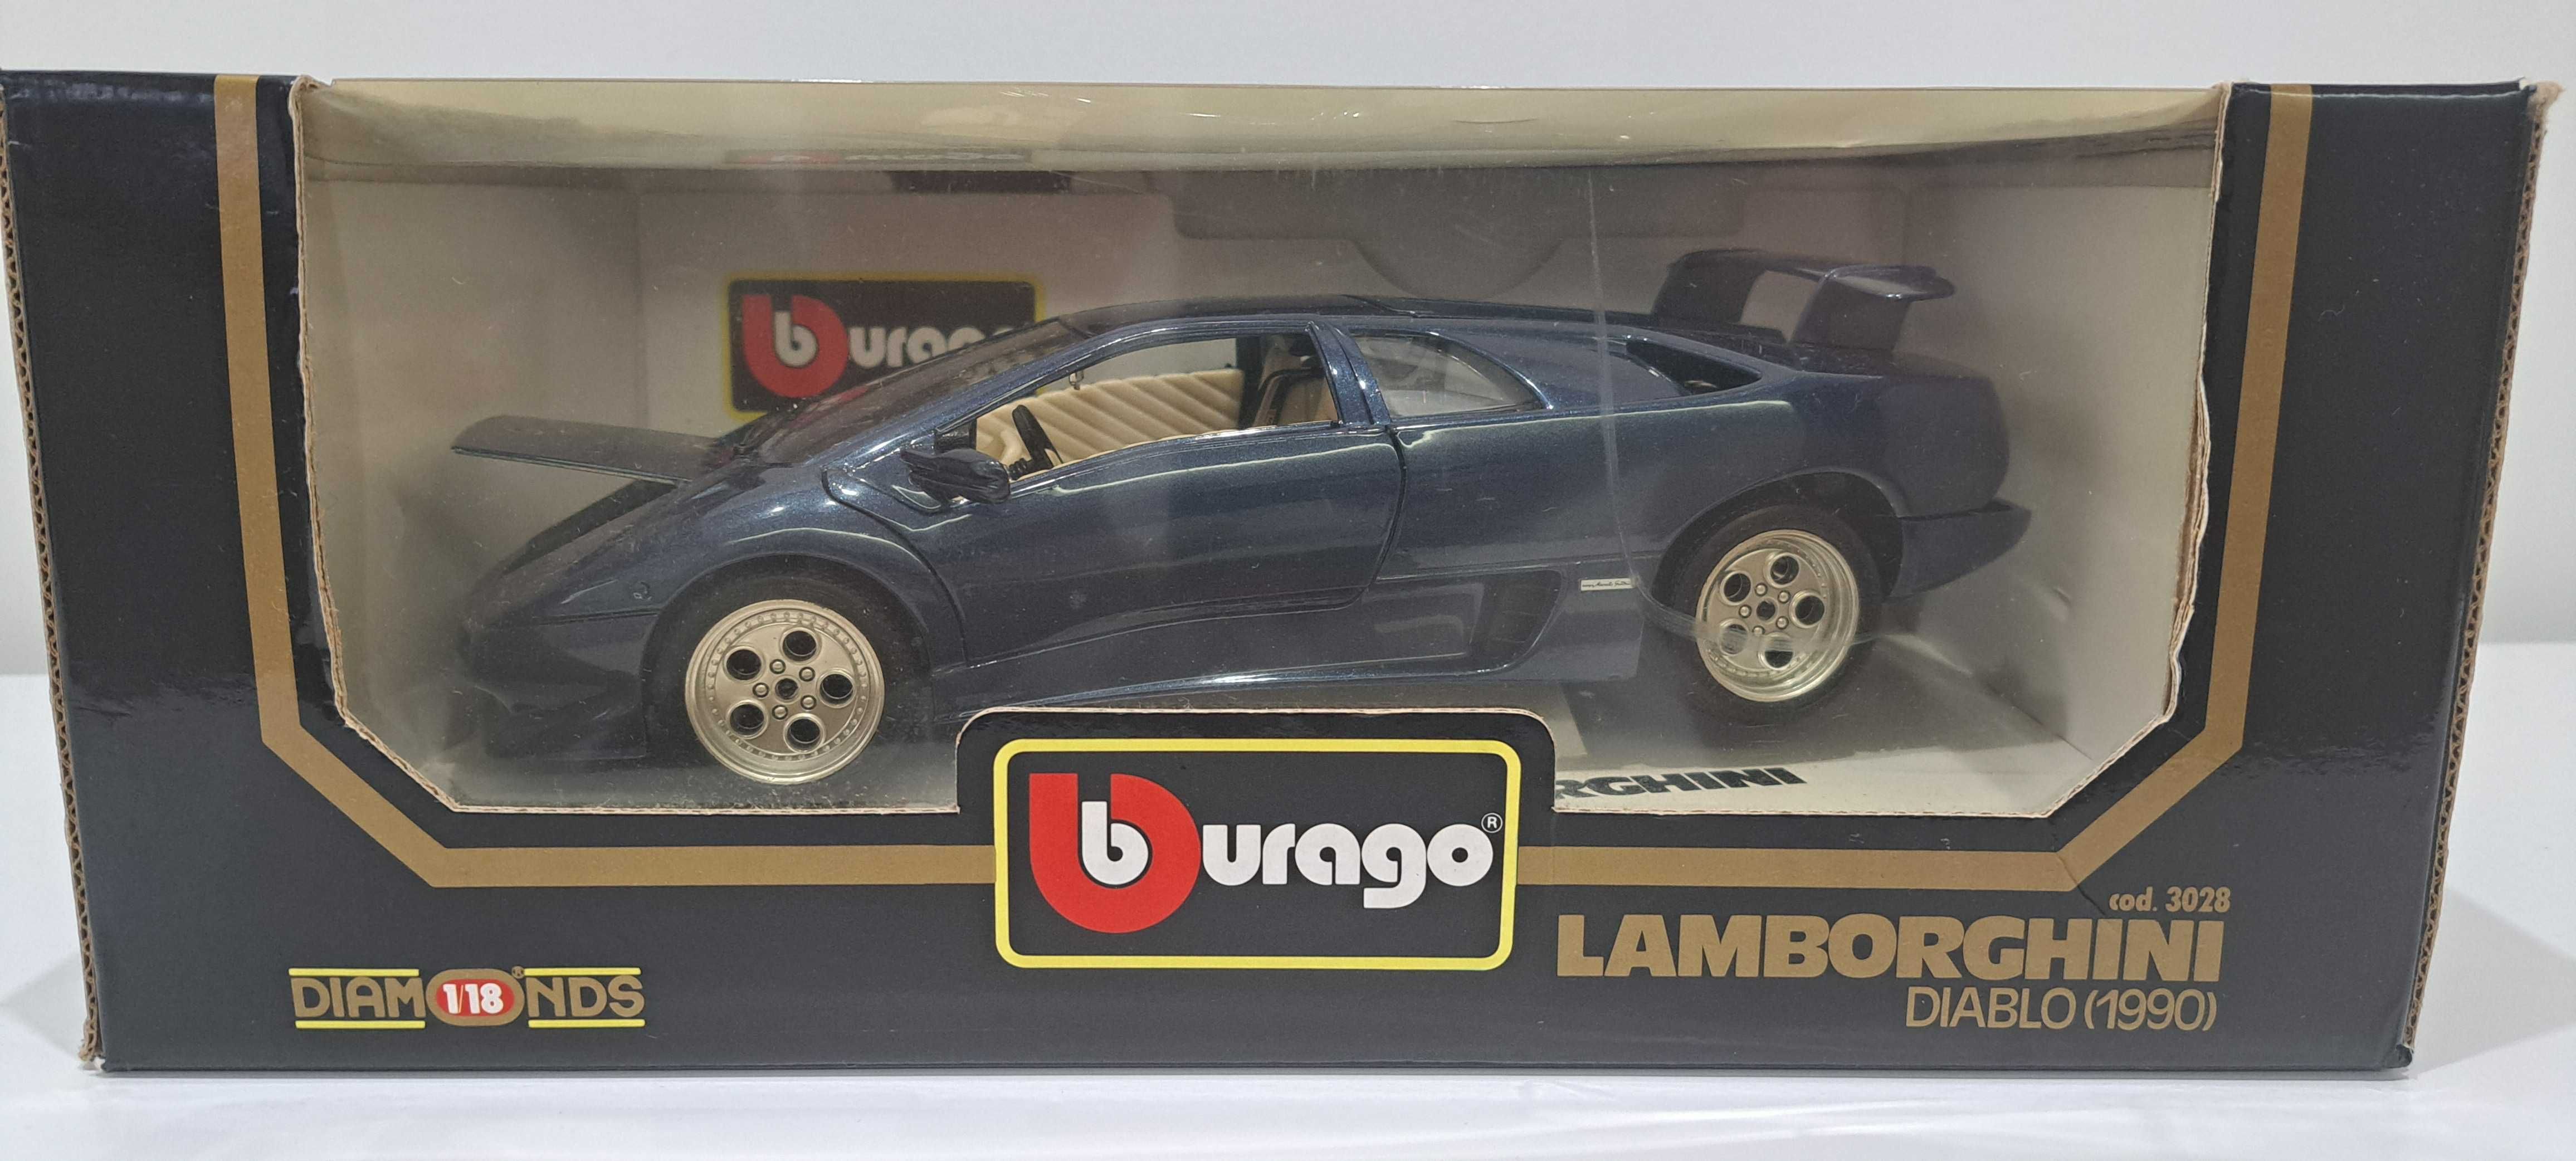 BBURAGO - Lamborghini Diablo (1990) 1/18 - DIECAST